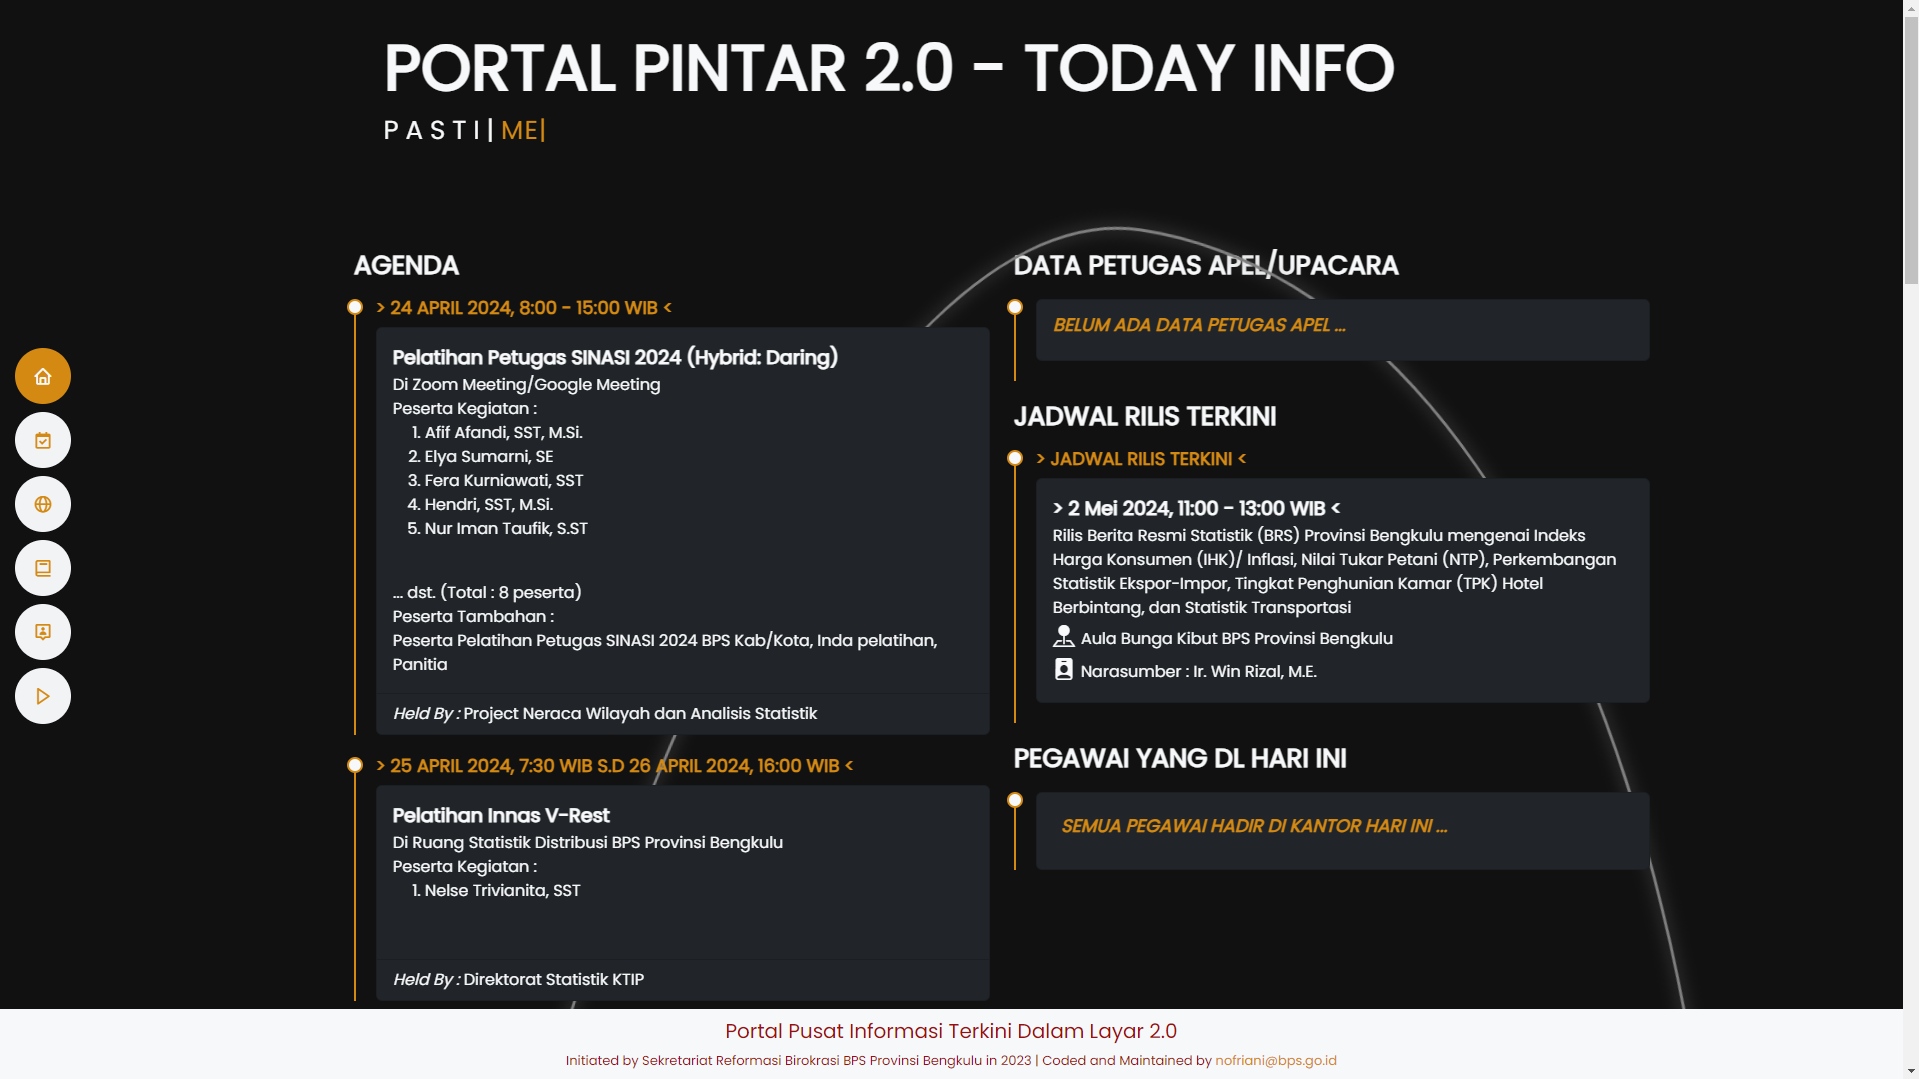 Portal Pusat Informasi Terkini Dalam Layar